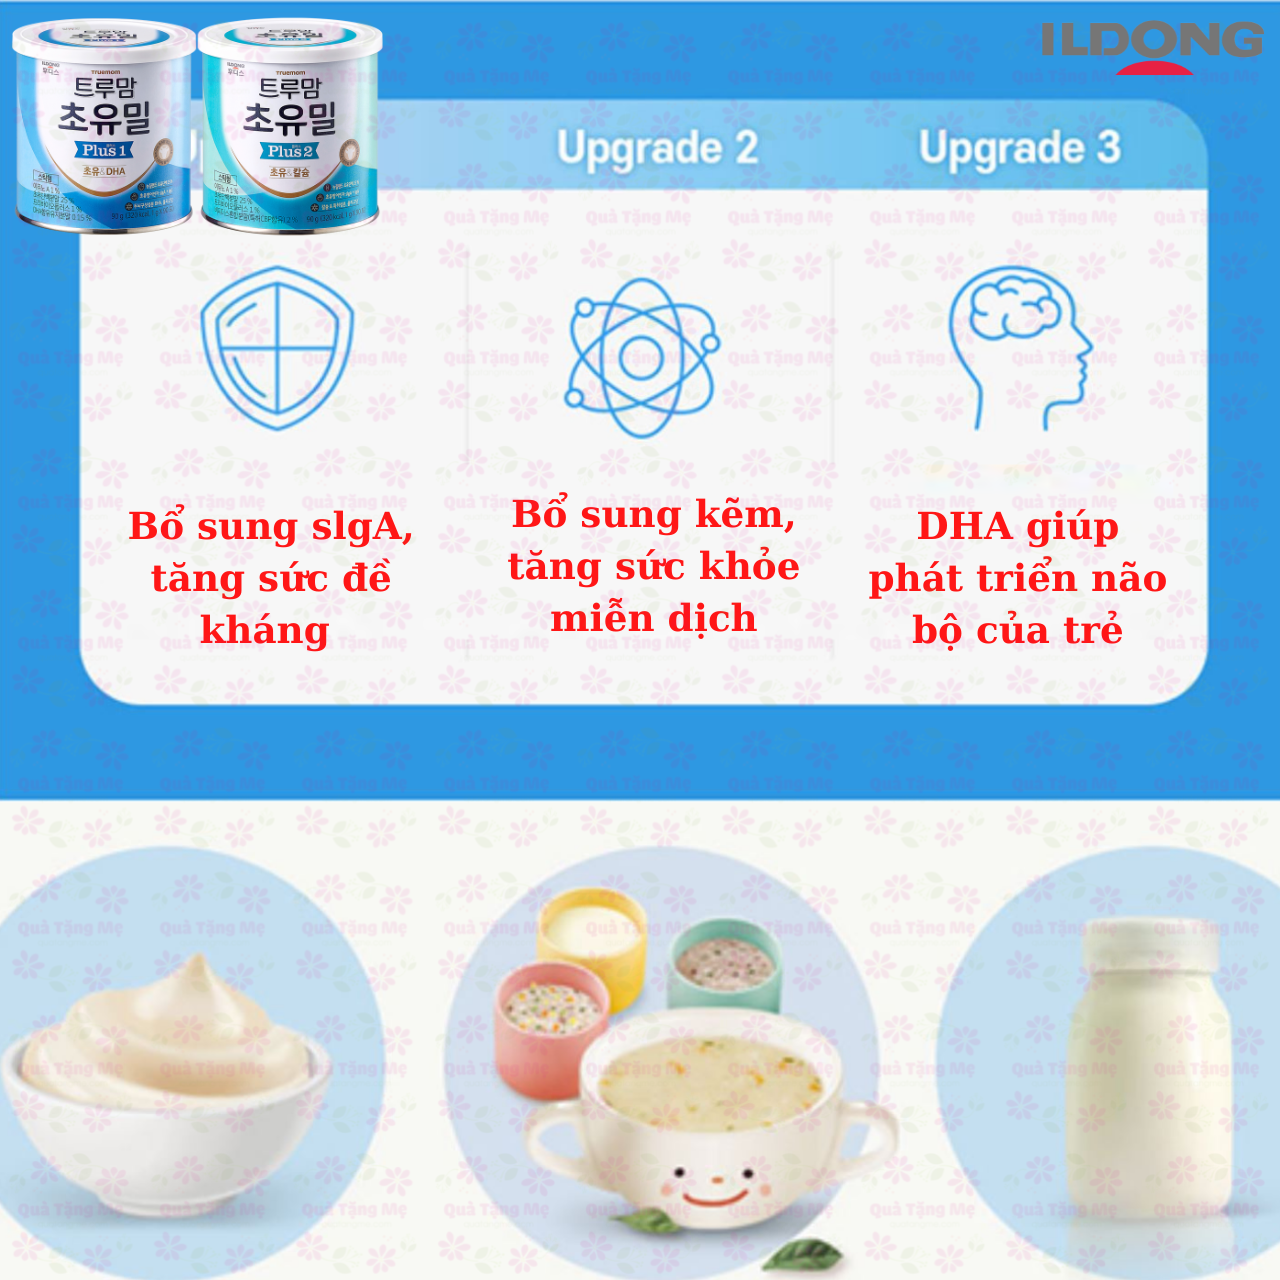 Sữa non cho bé từ 1-9 tuổi Ildong Plus 2 Hàn Quốc giúp trẻ phát triển trí não, xương, răng, tăng sức đề kháng, tiêu hóa tốt - QuaTangMe -3 lon